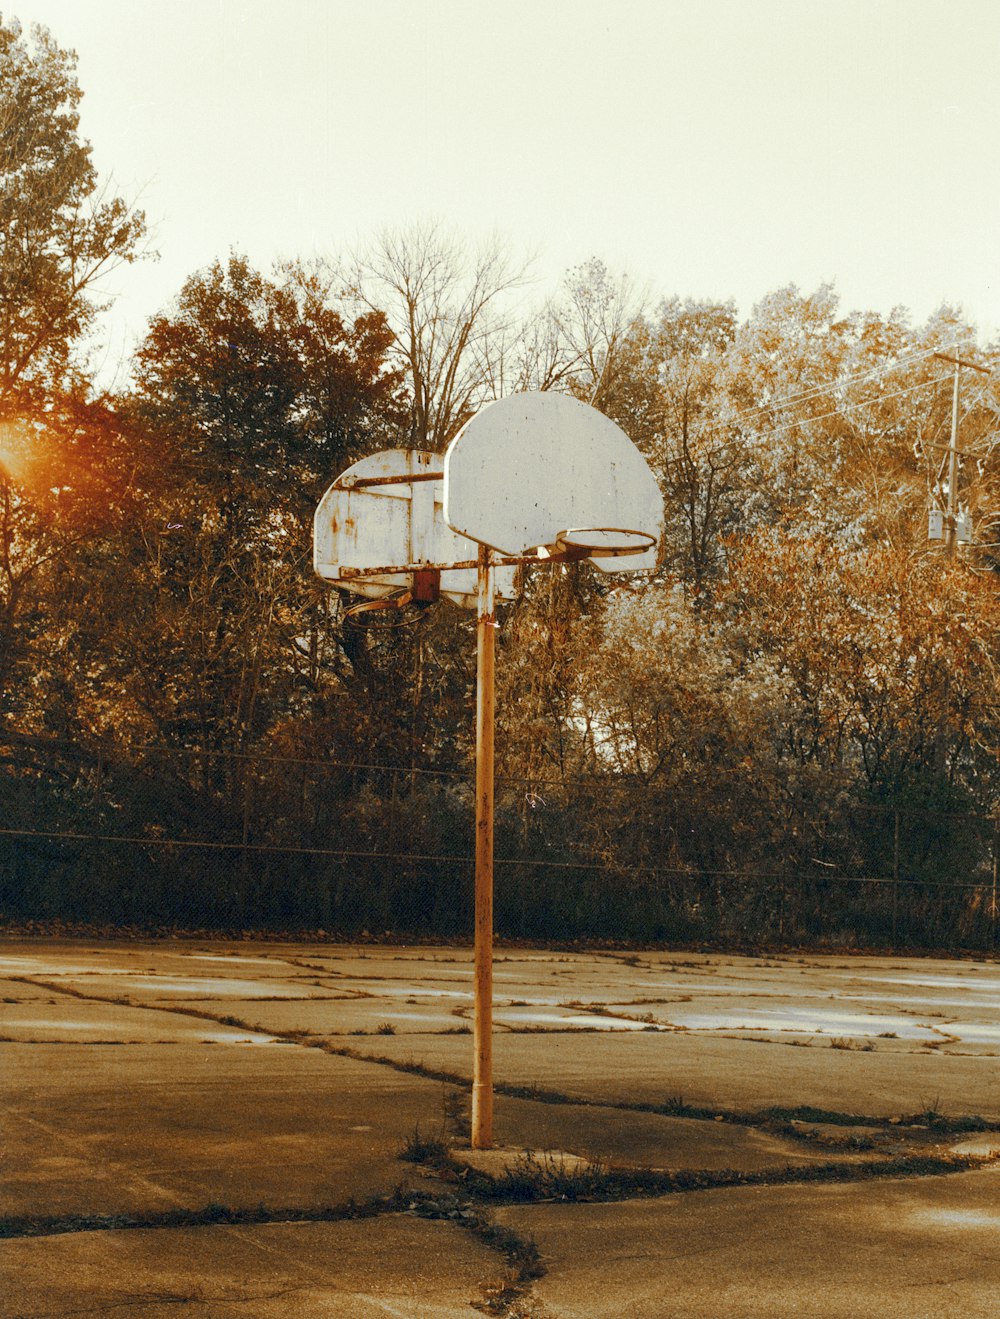 white basketball hoop near trees during daytime